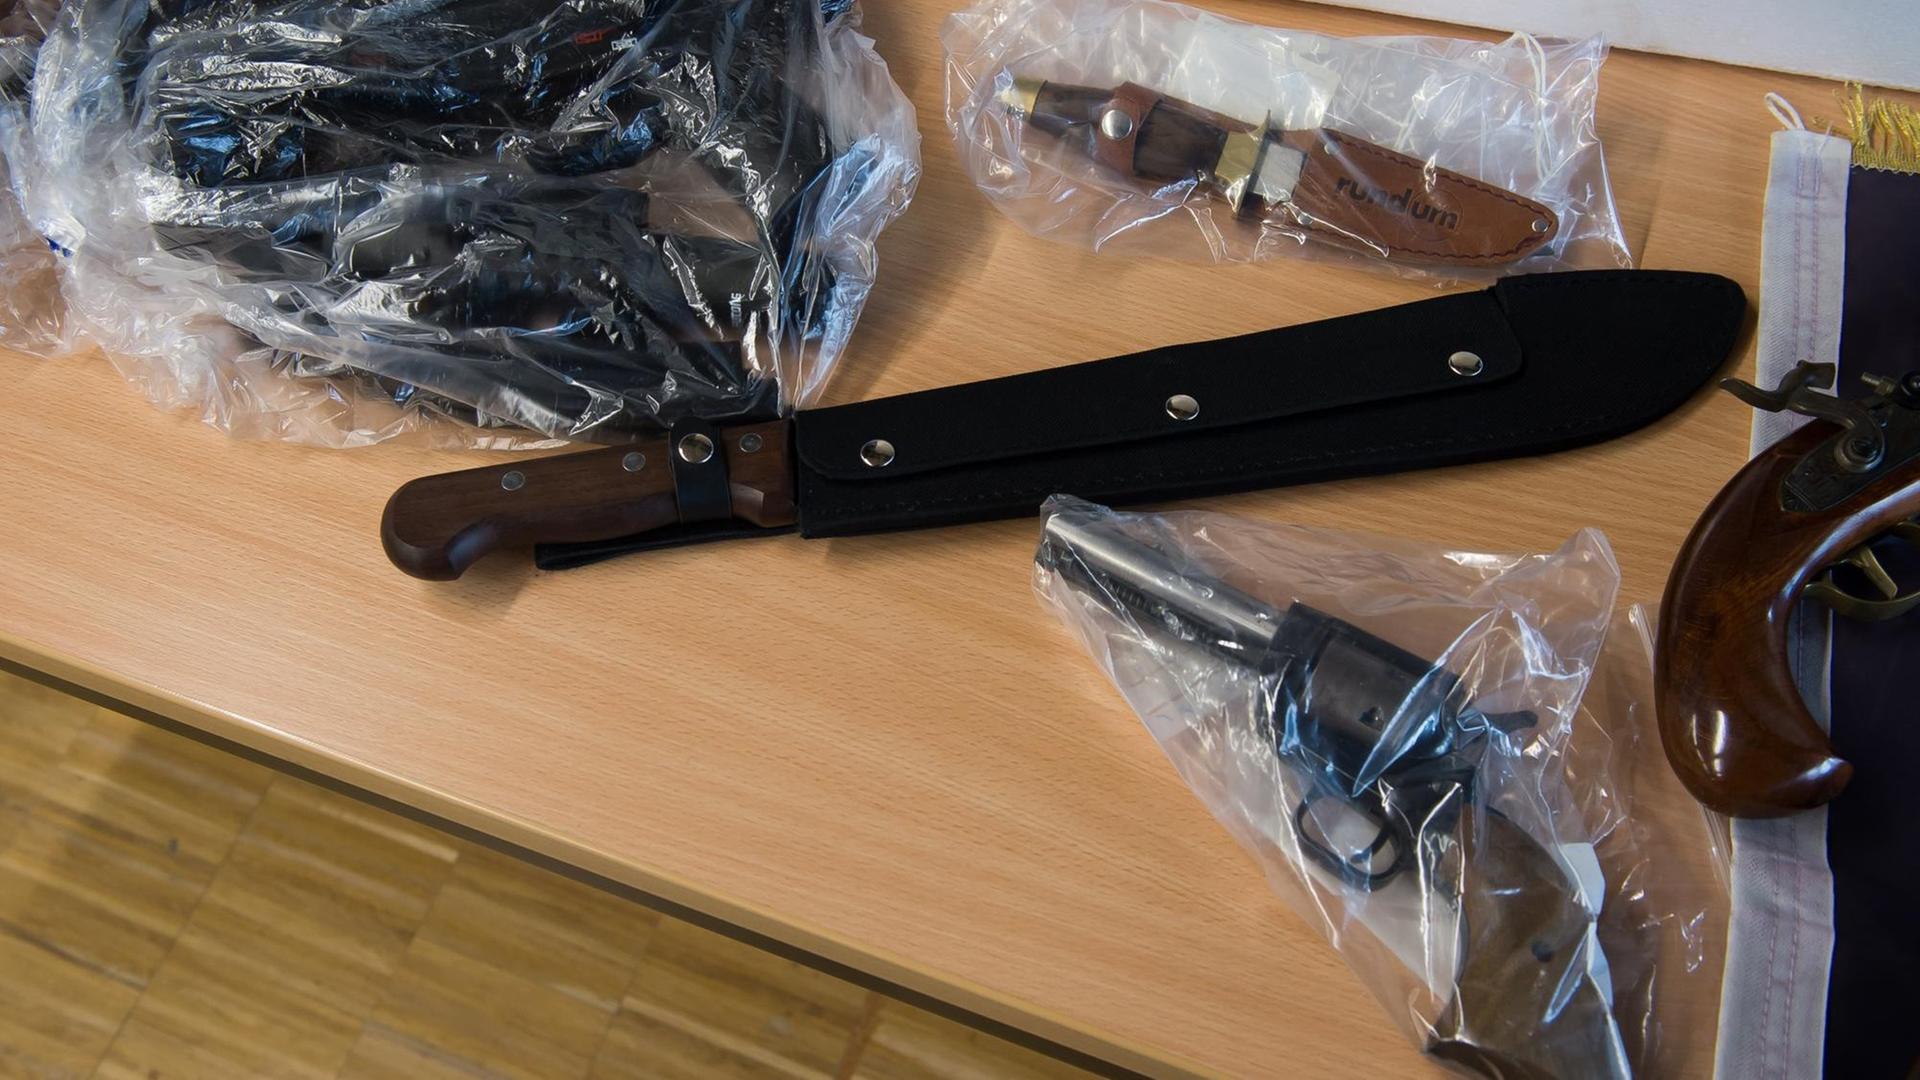 Beschlagnahmte Gegenstände liegen am 09.02.2017 während einer Pressekonferenz der Polizei in Göttingen (Niedersachsen) auf einem Tisch. Zu sehen sind eine Machete und Schusswaffen.